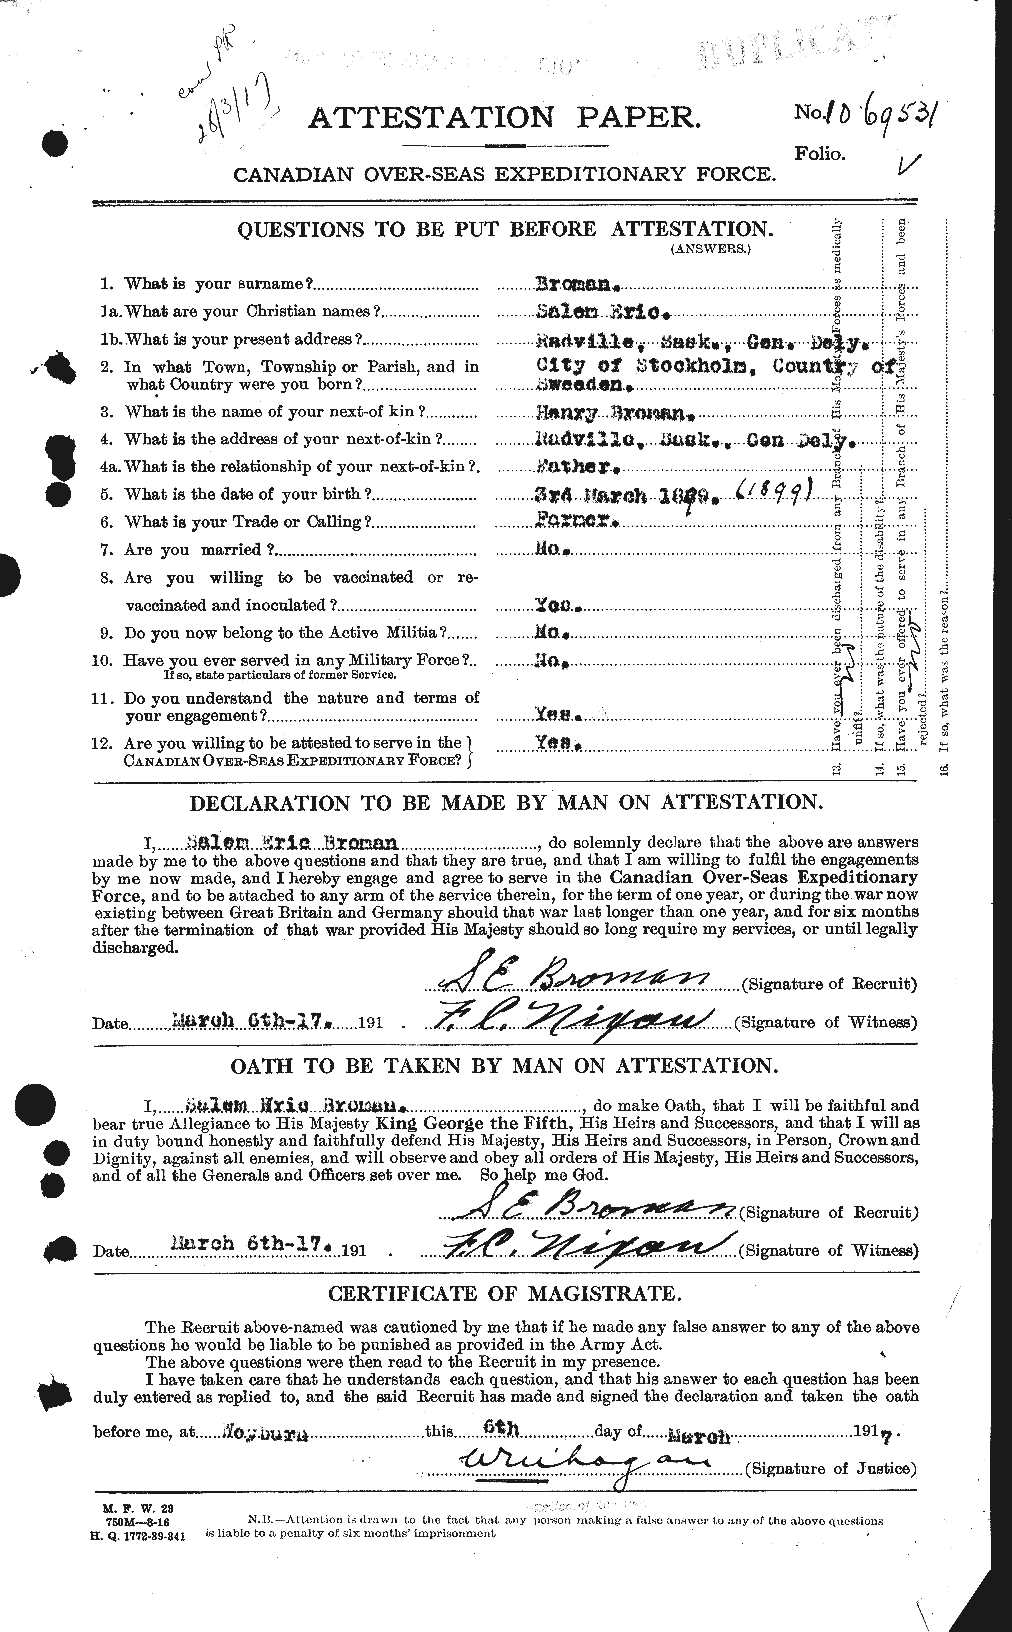 Dossiers du Personnel de la Première Guerre mondiale - CEC 262124a